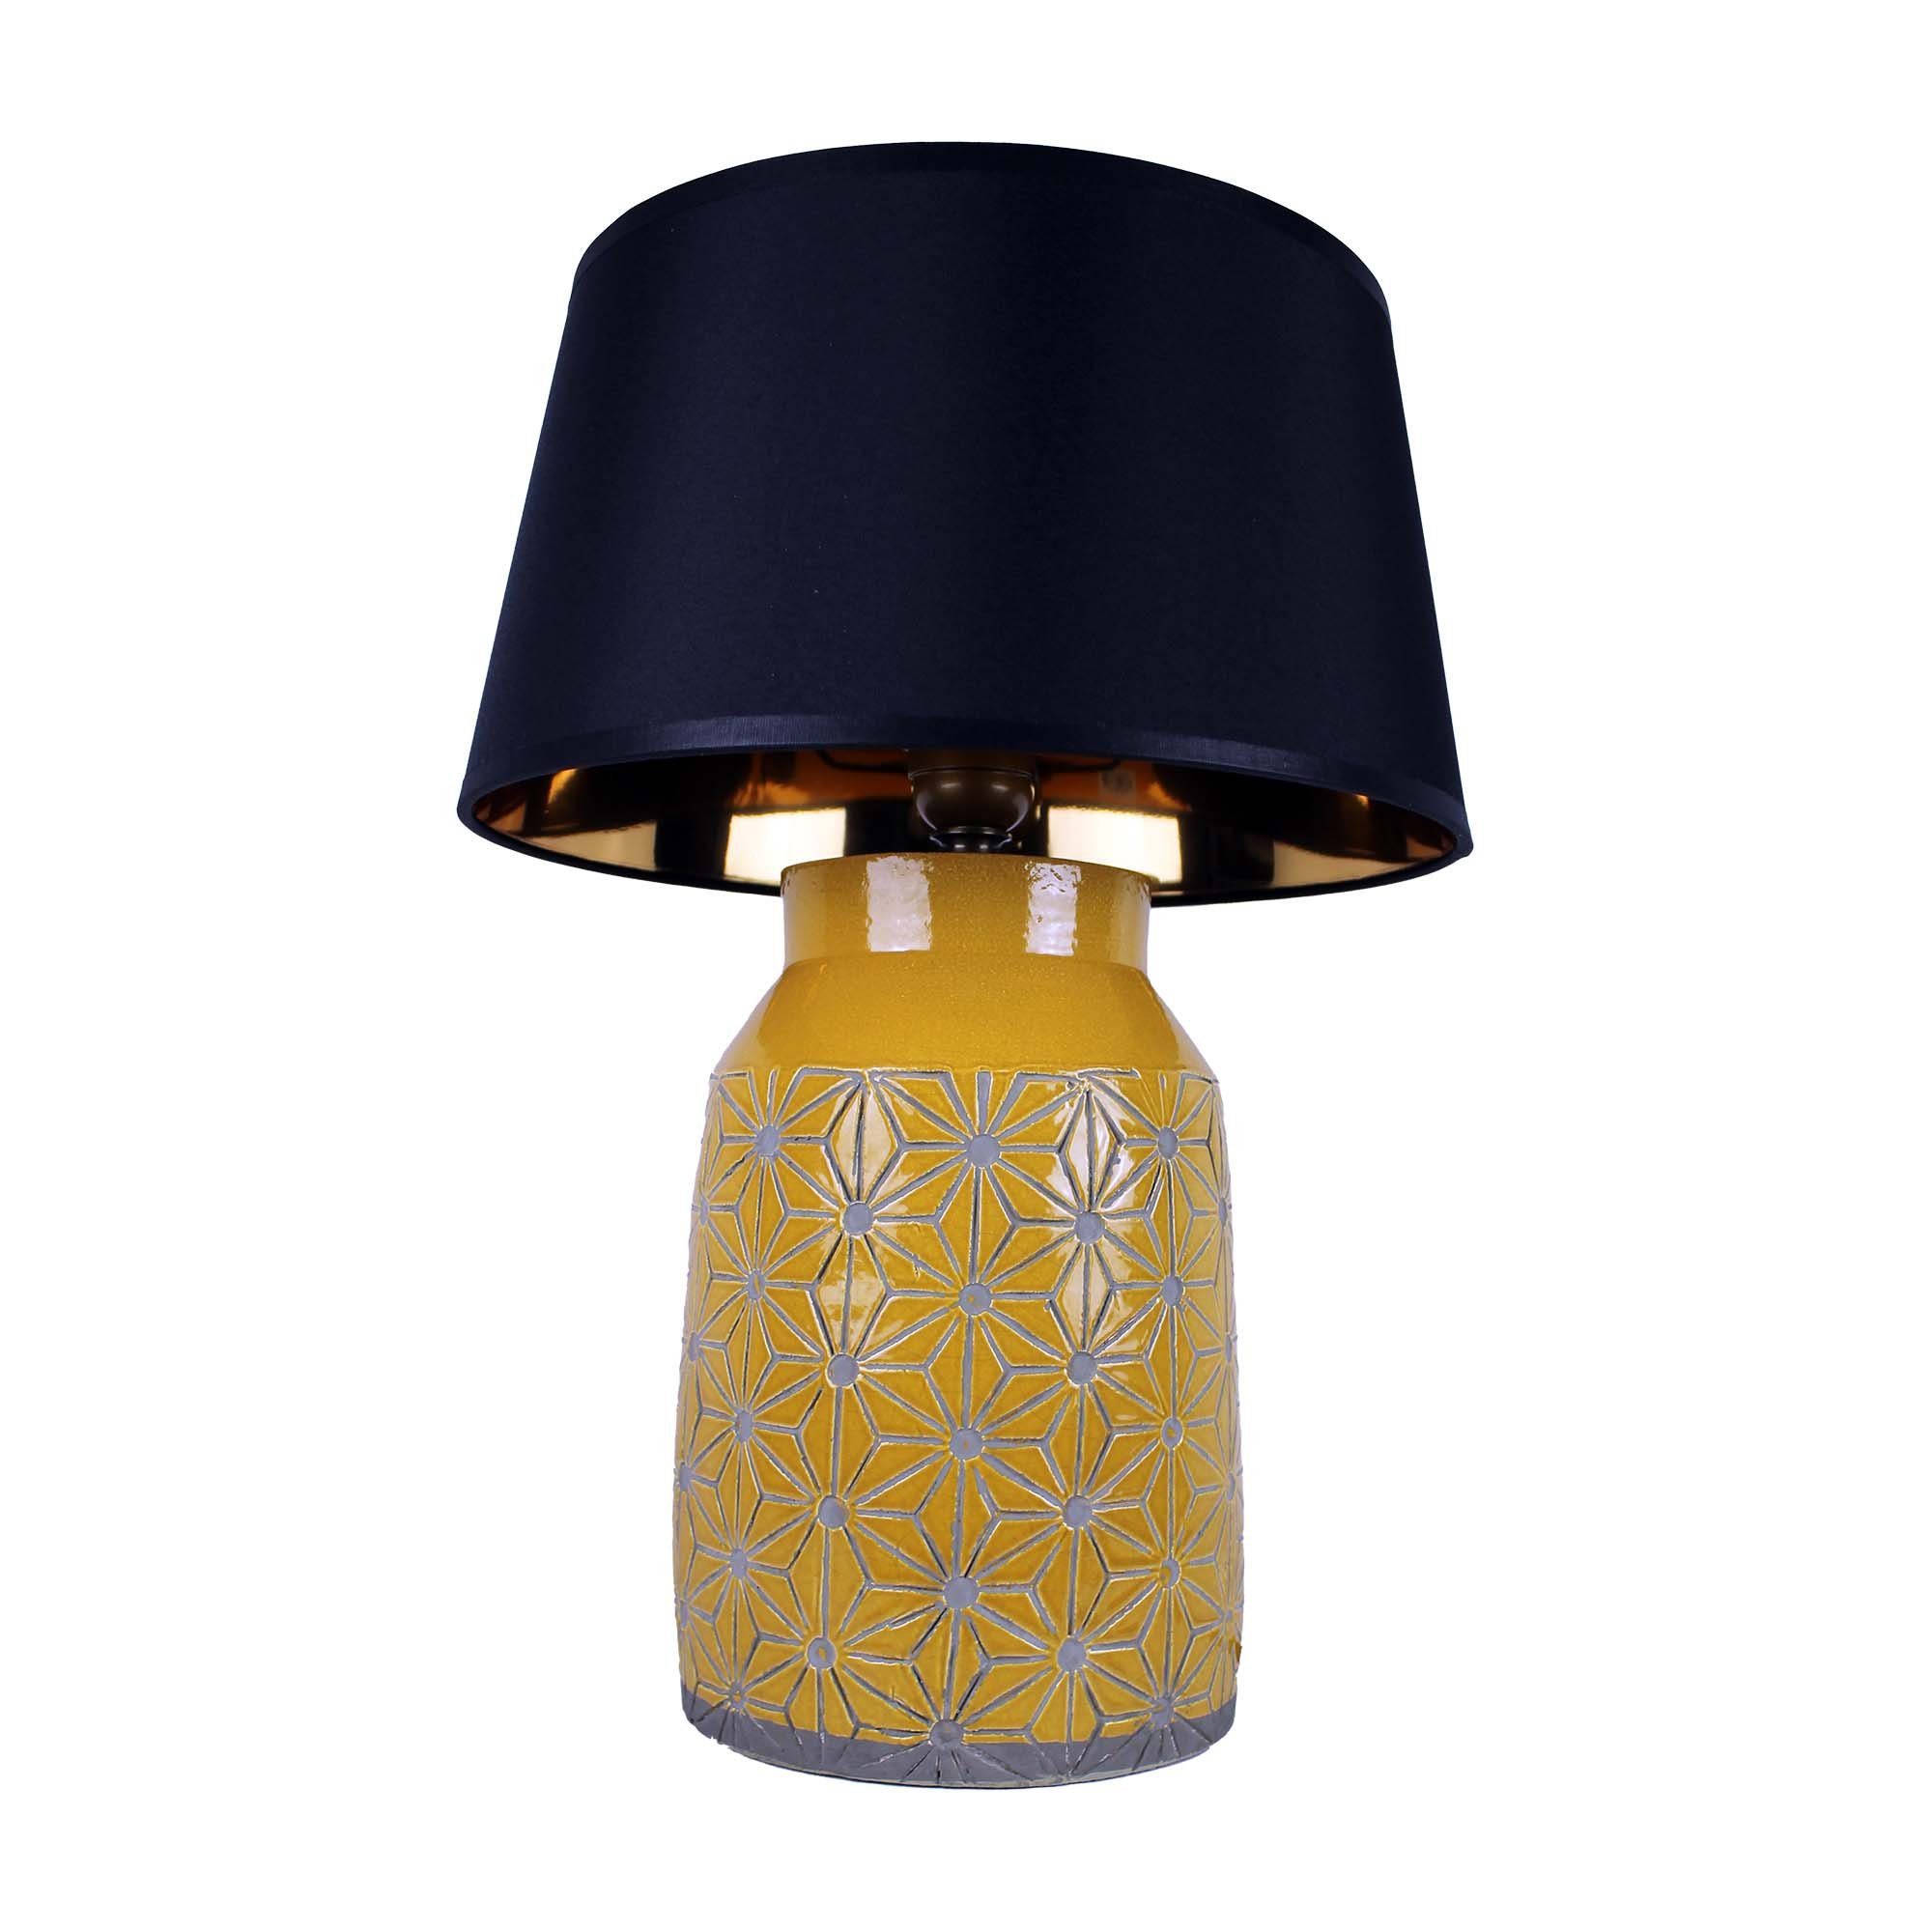 Cosy Home Ideas Nachttischlampe Tischlampe aus Keramik gemustert gelb mit Schirm schwarz, ohne Leuchtmittel, warmweiß, Tischlampe, als Nachttischlampe nutzbar